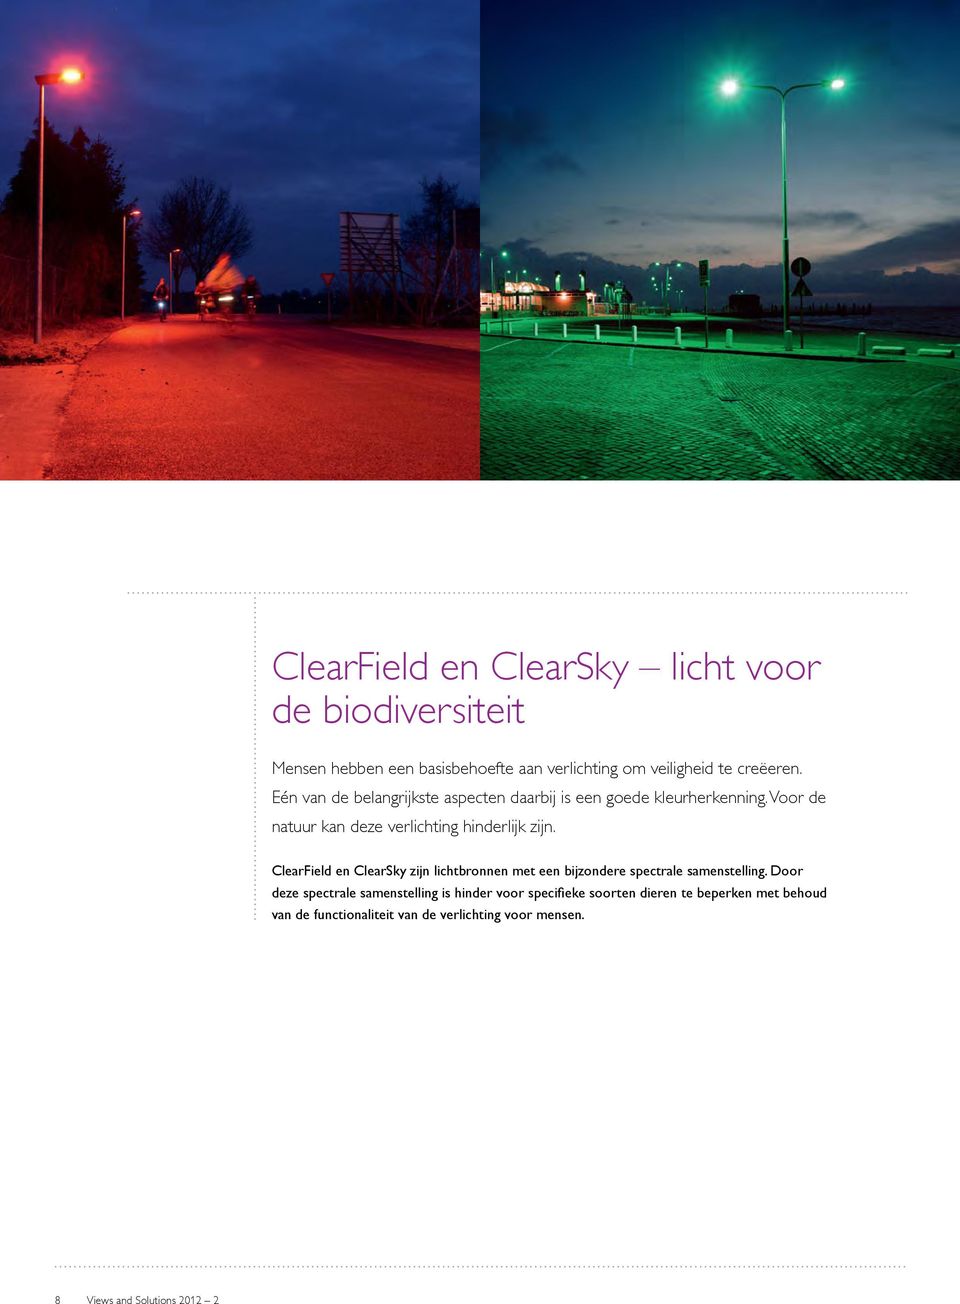 ClearField en ClearSky zijn lichtbronnen met een bijzondere spectrale samenstelling.